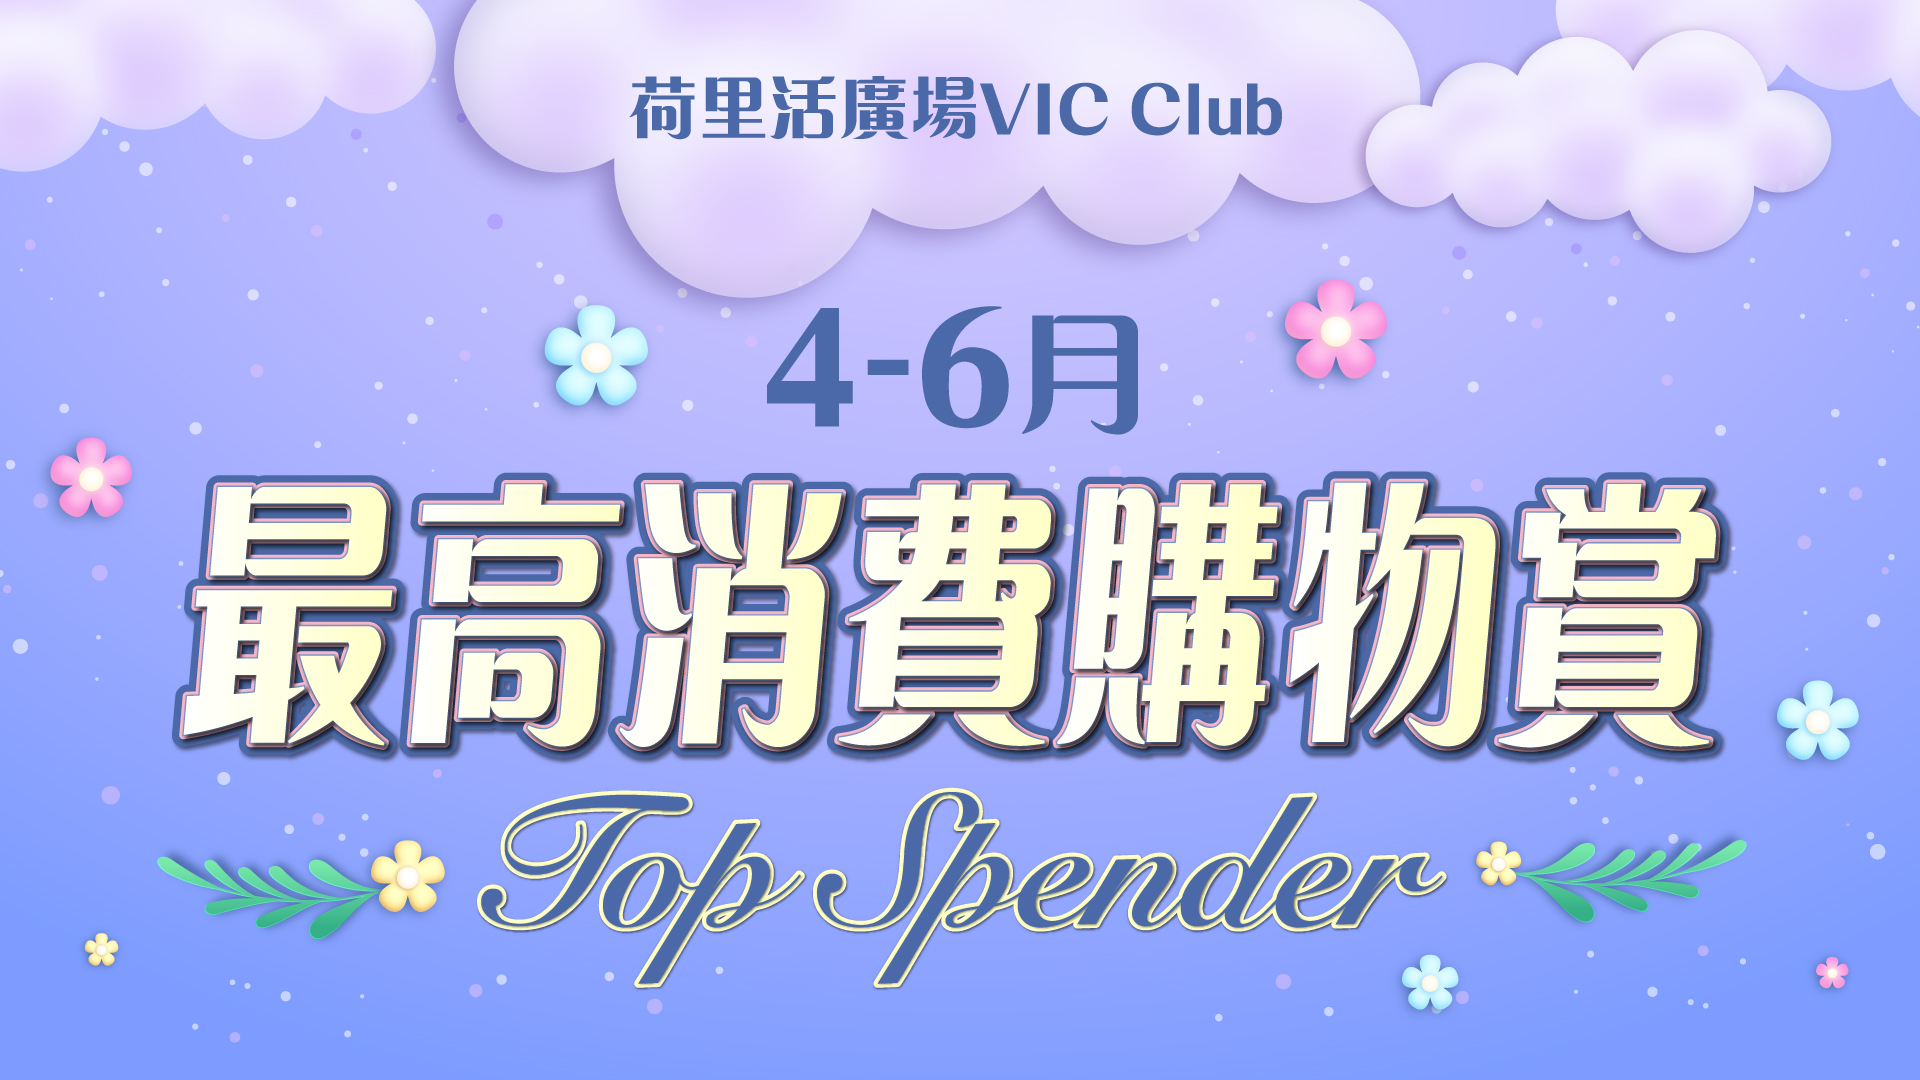 VIC Highest Spending Program (Apr - Jun)